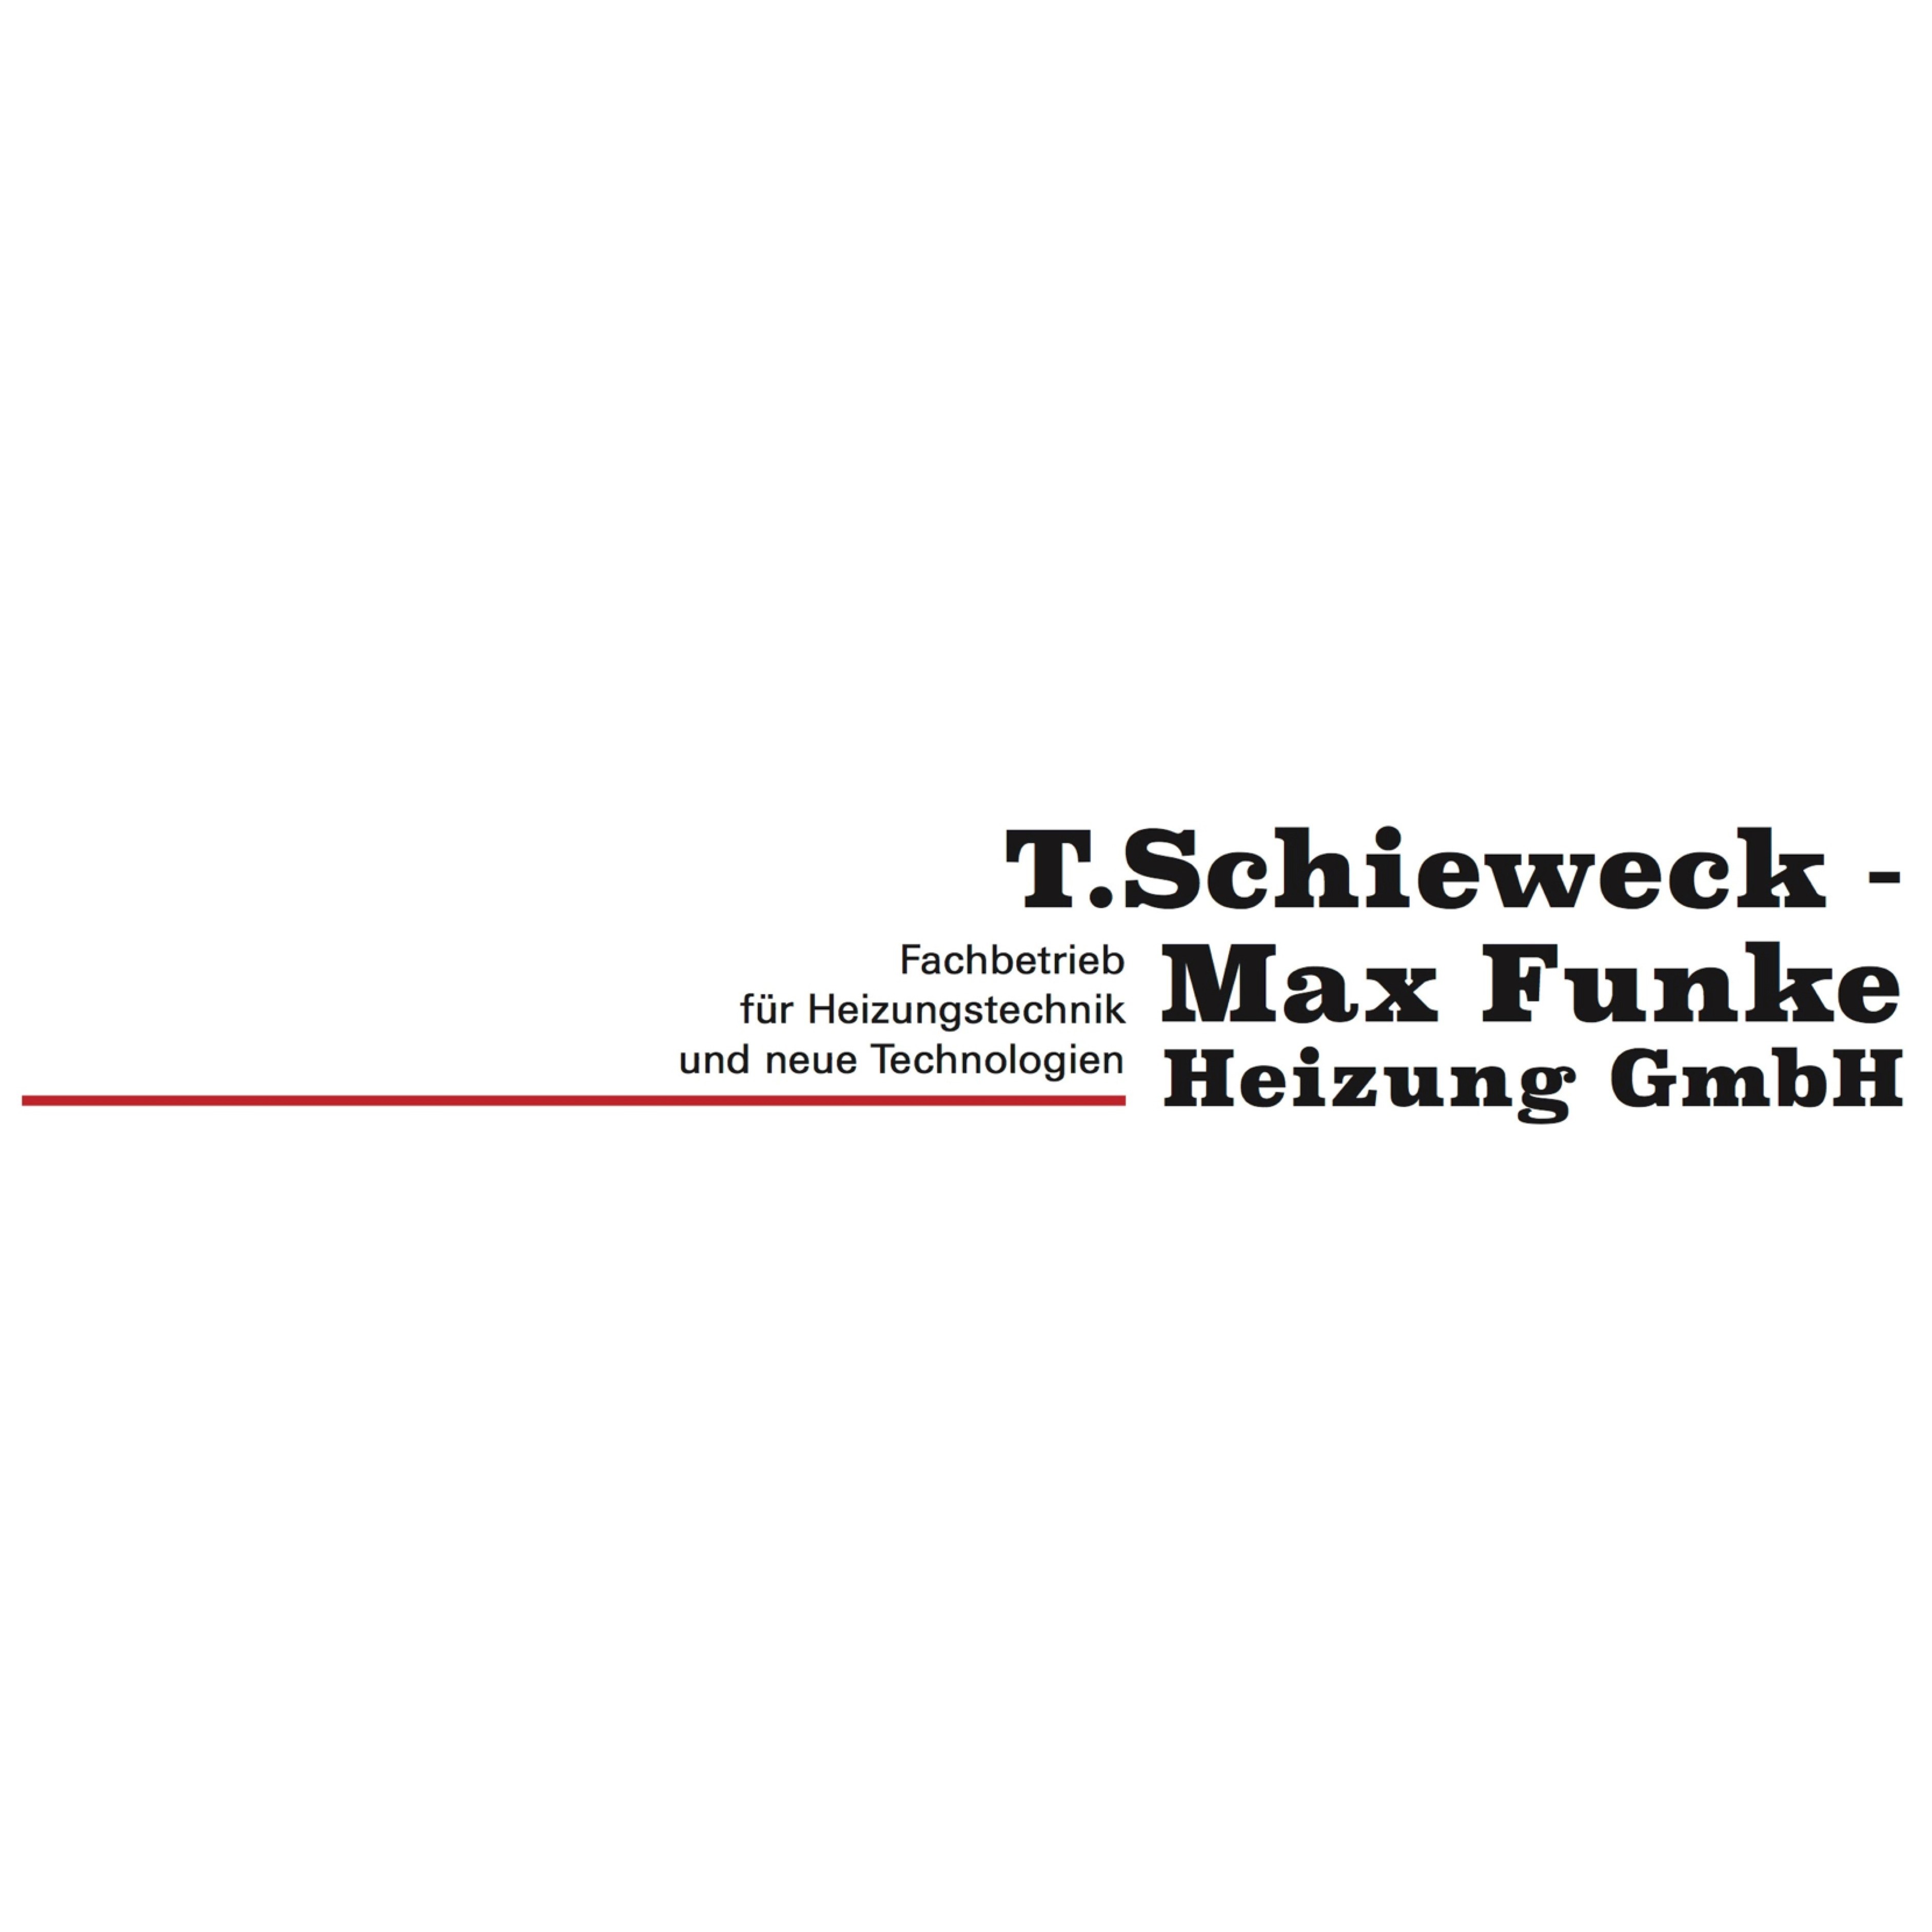 Kundenlogo T. Schieweck - Max Funke Heizung GmbH